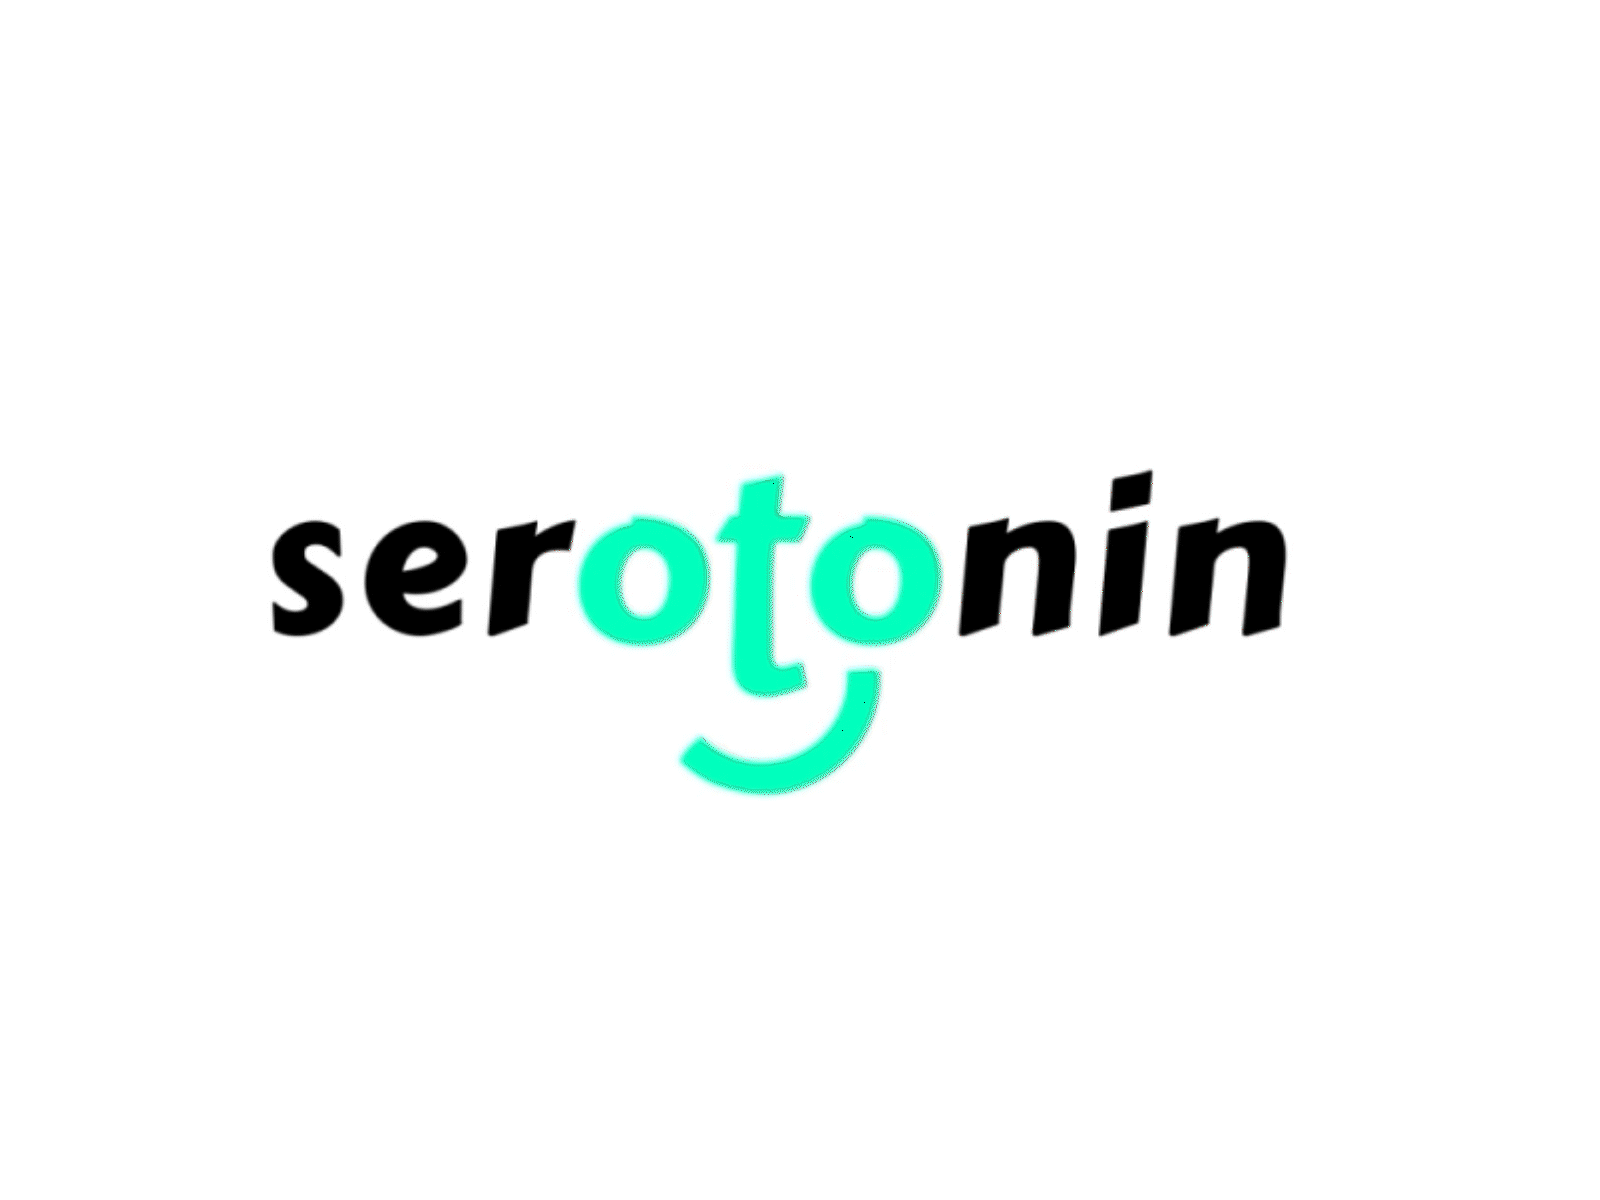 Serotonin - Type & animation